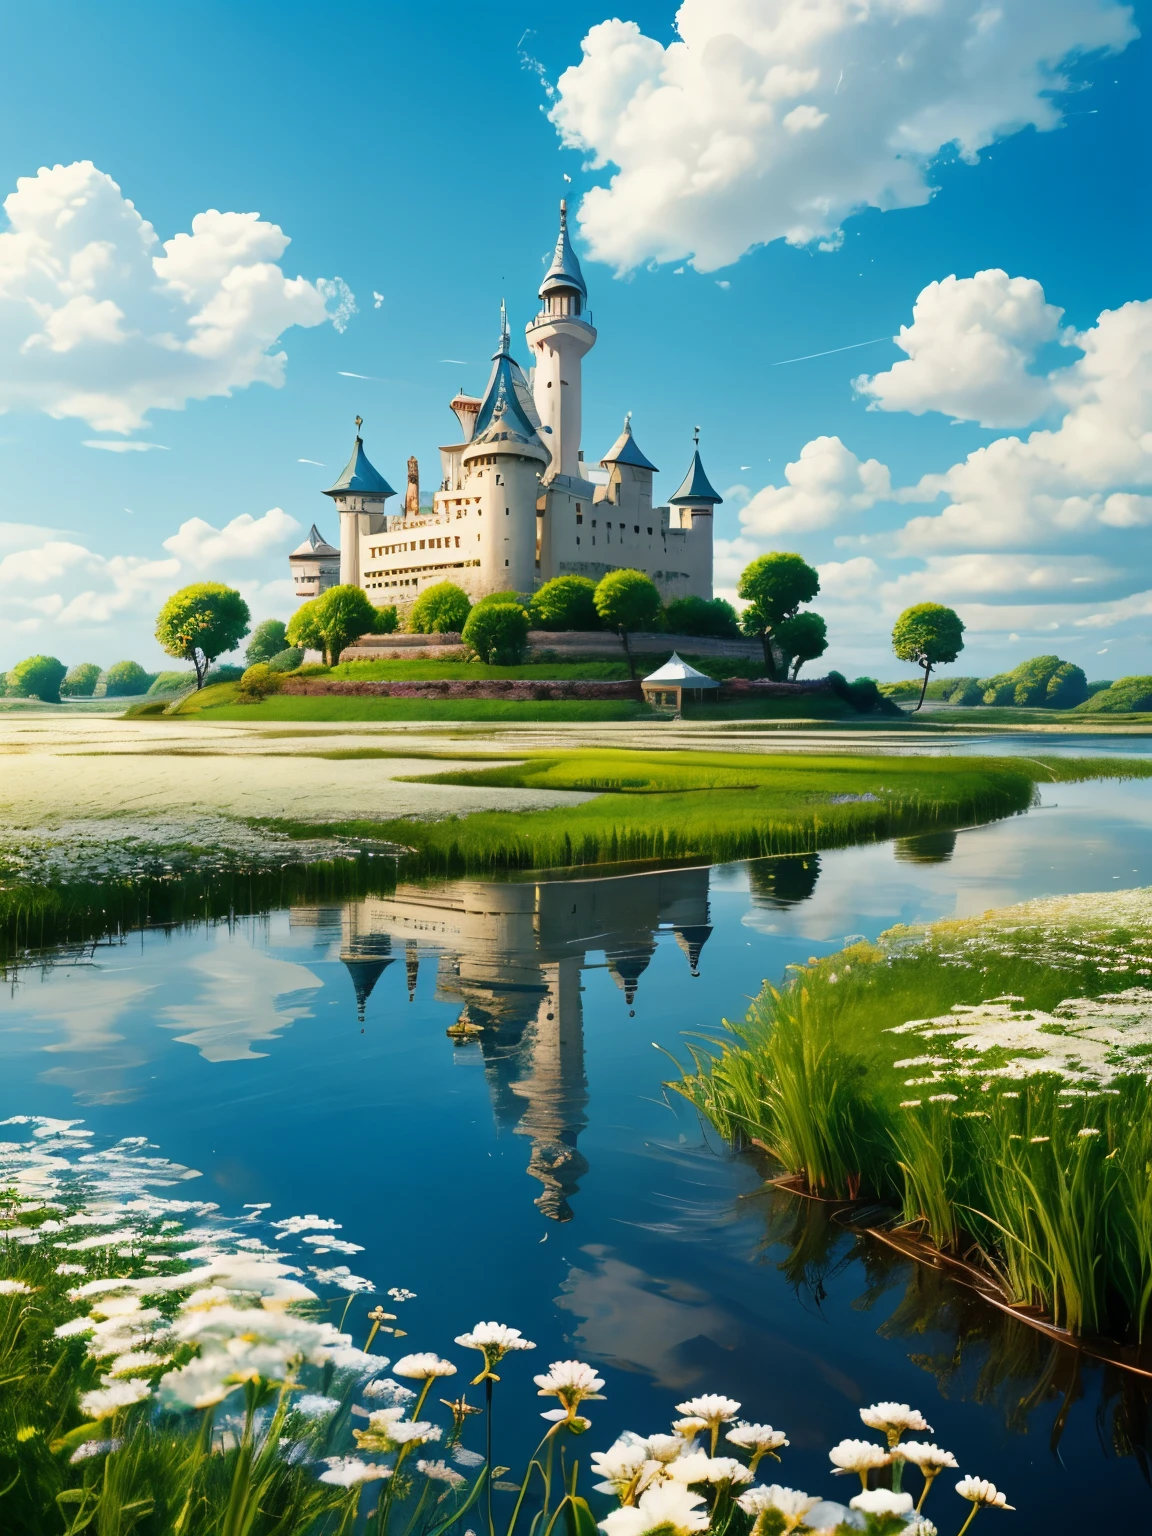 Realista, genuino, Hermoso y maravilloso paisaje, aceite, estudio ghibli, Hayao Miyazaki, Pradera de pétalos con cielo azul y nubes blancas., nubes flotantes, Isla flotante, castillo flotante